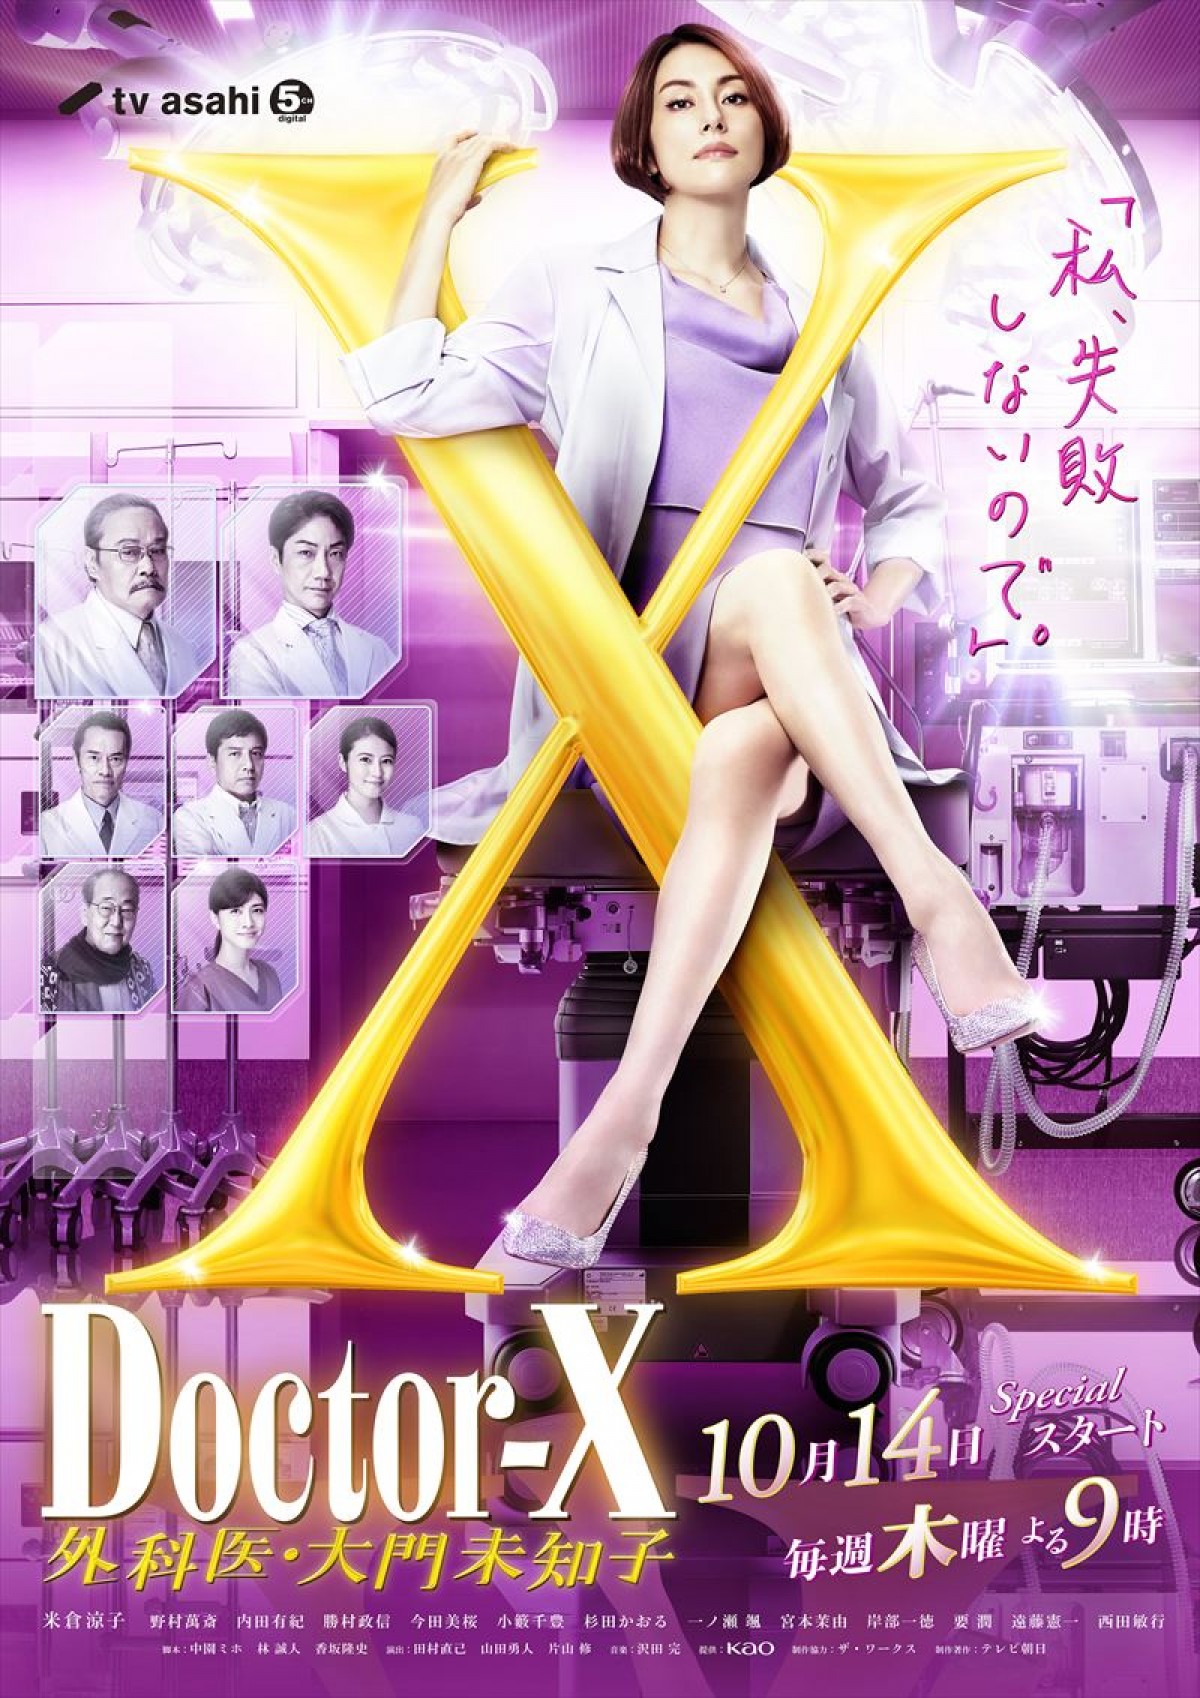 『ドクターX』新シリーズ、主題歌はAdo　大門未知子とのコラボビジュアル解禁